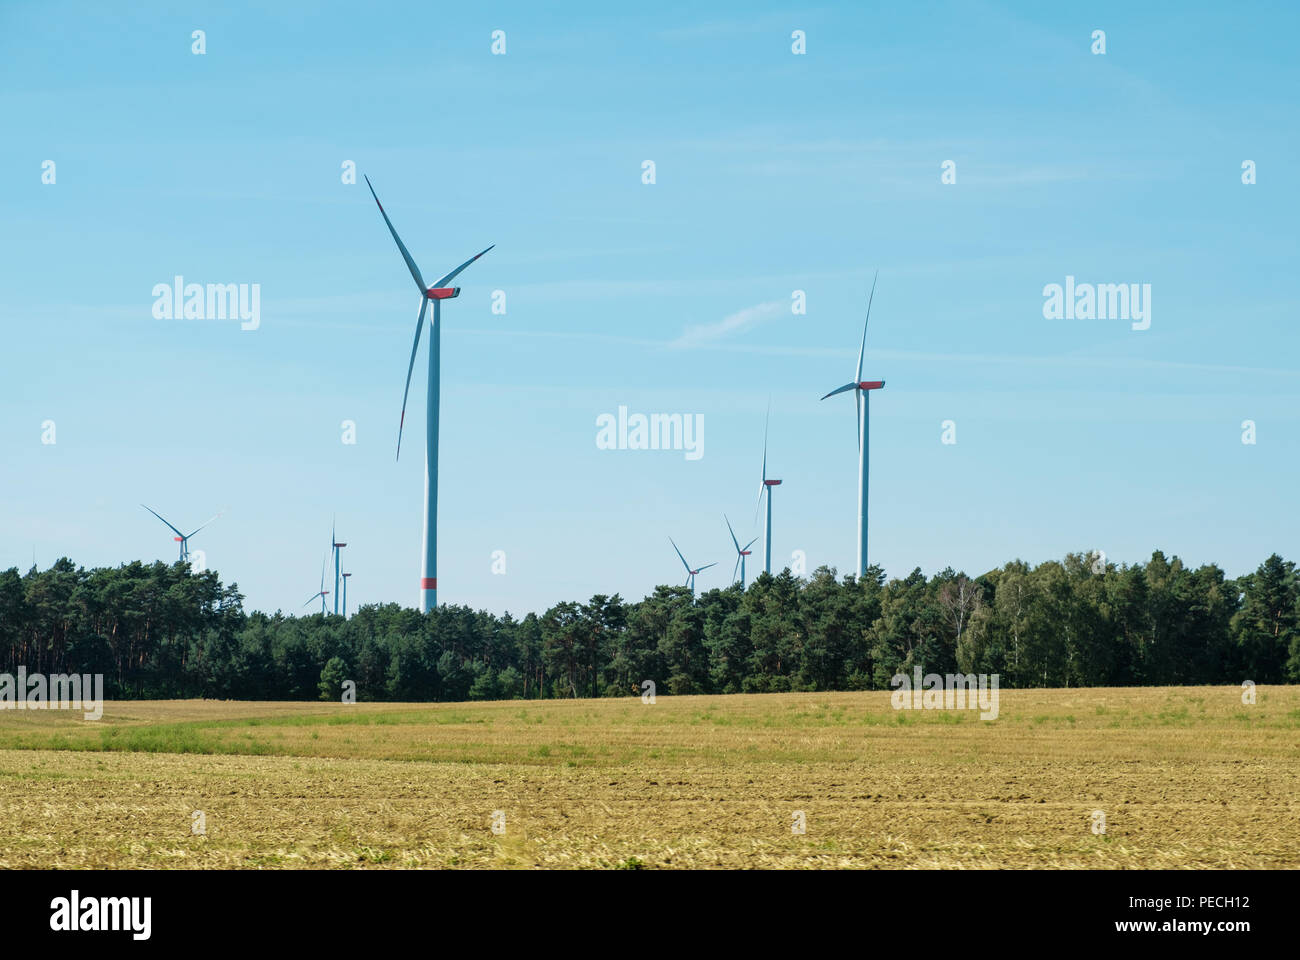 Windenergieanlagen/Windmühlen in ländlichen Landschaft - Erneuerbare Energien Stockfoto